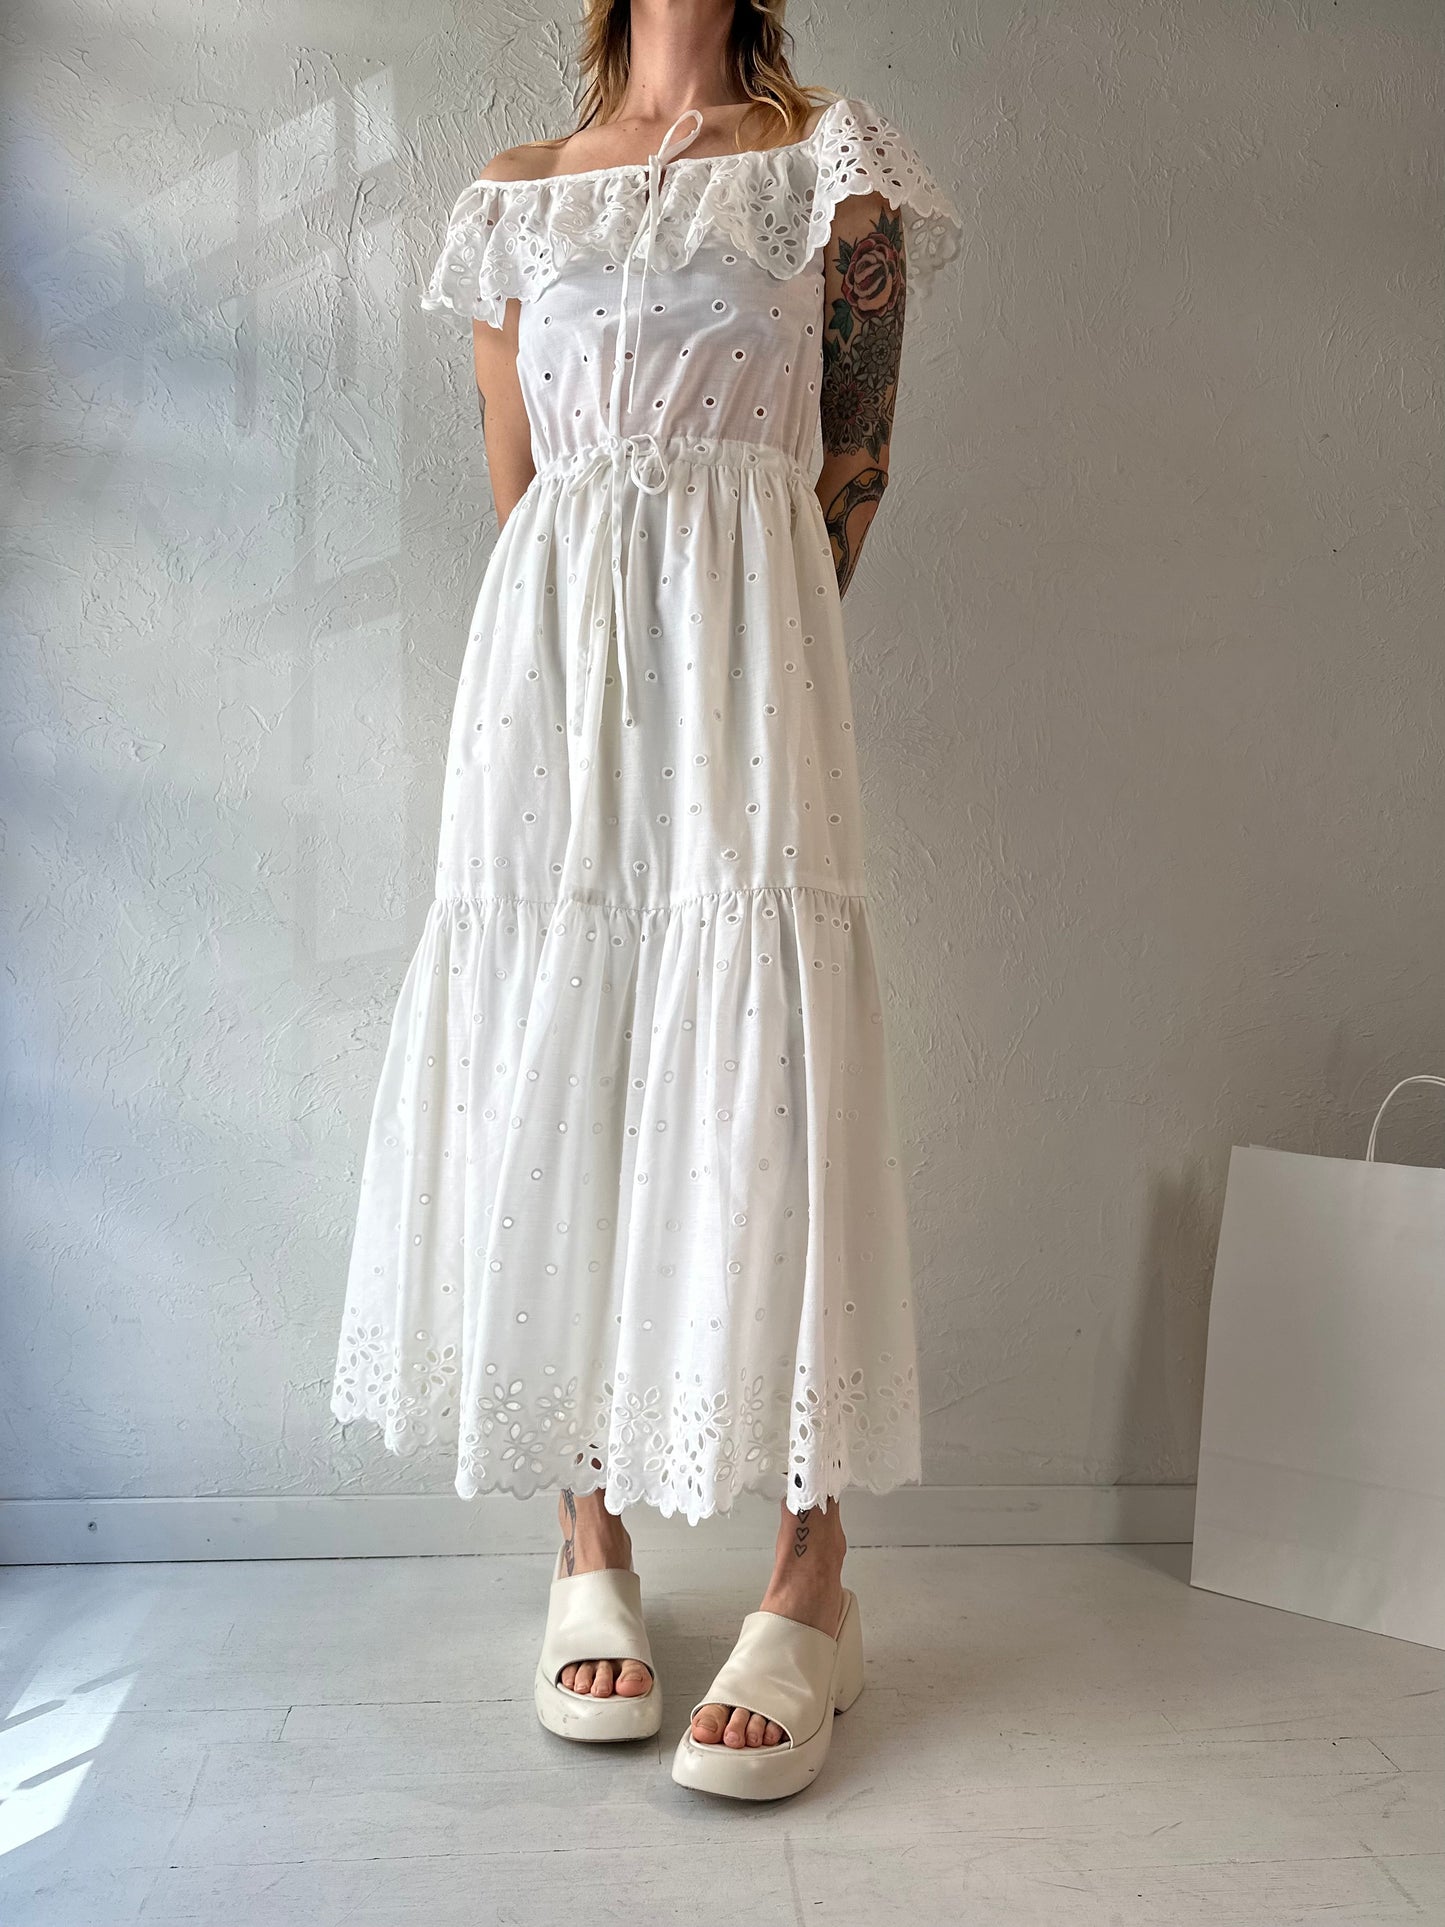 Vintage White Cotton Eyelet Midi Dress / Small